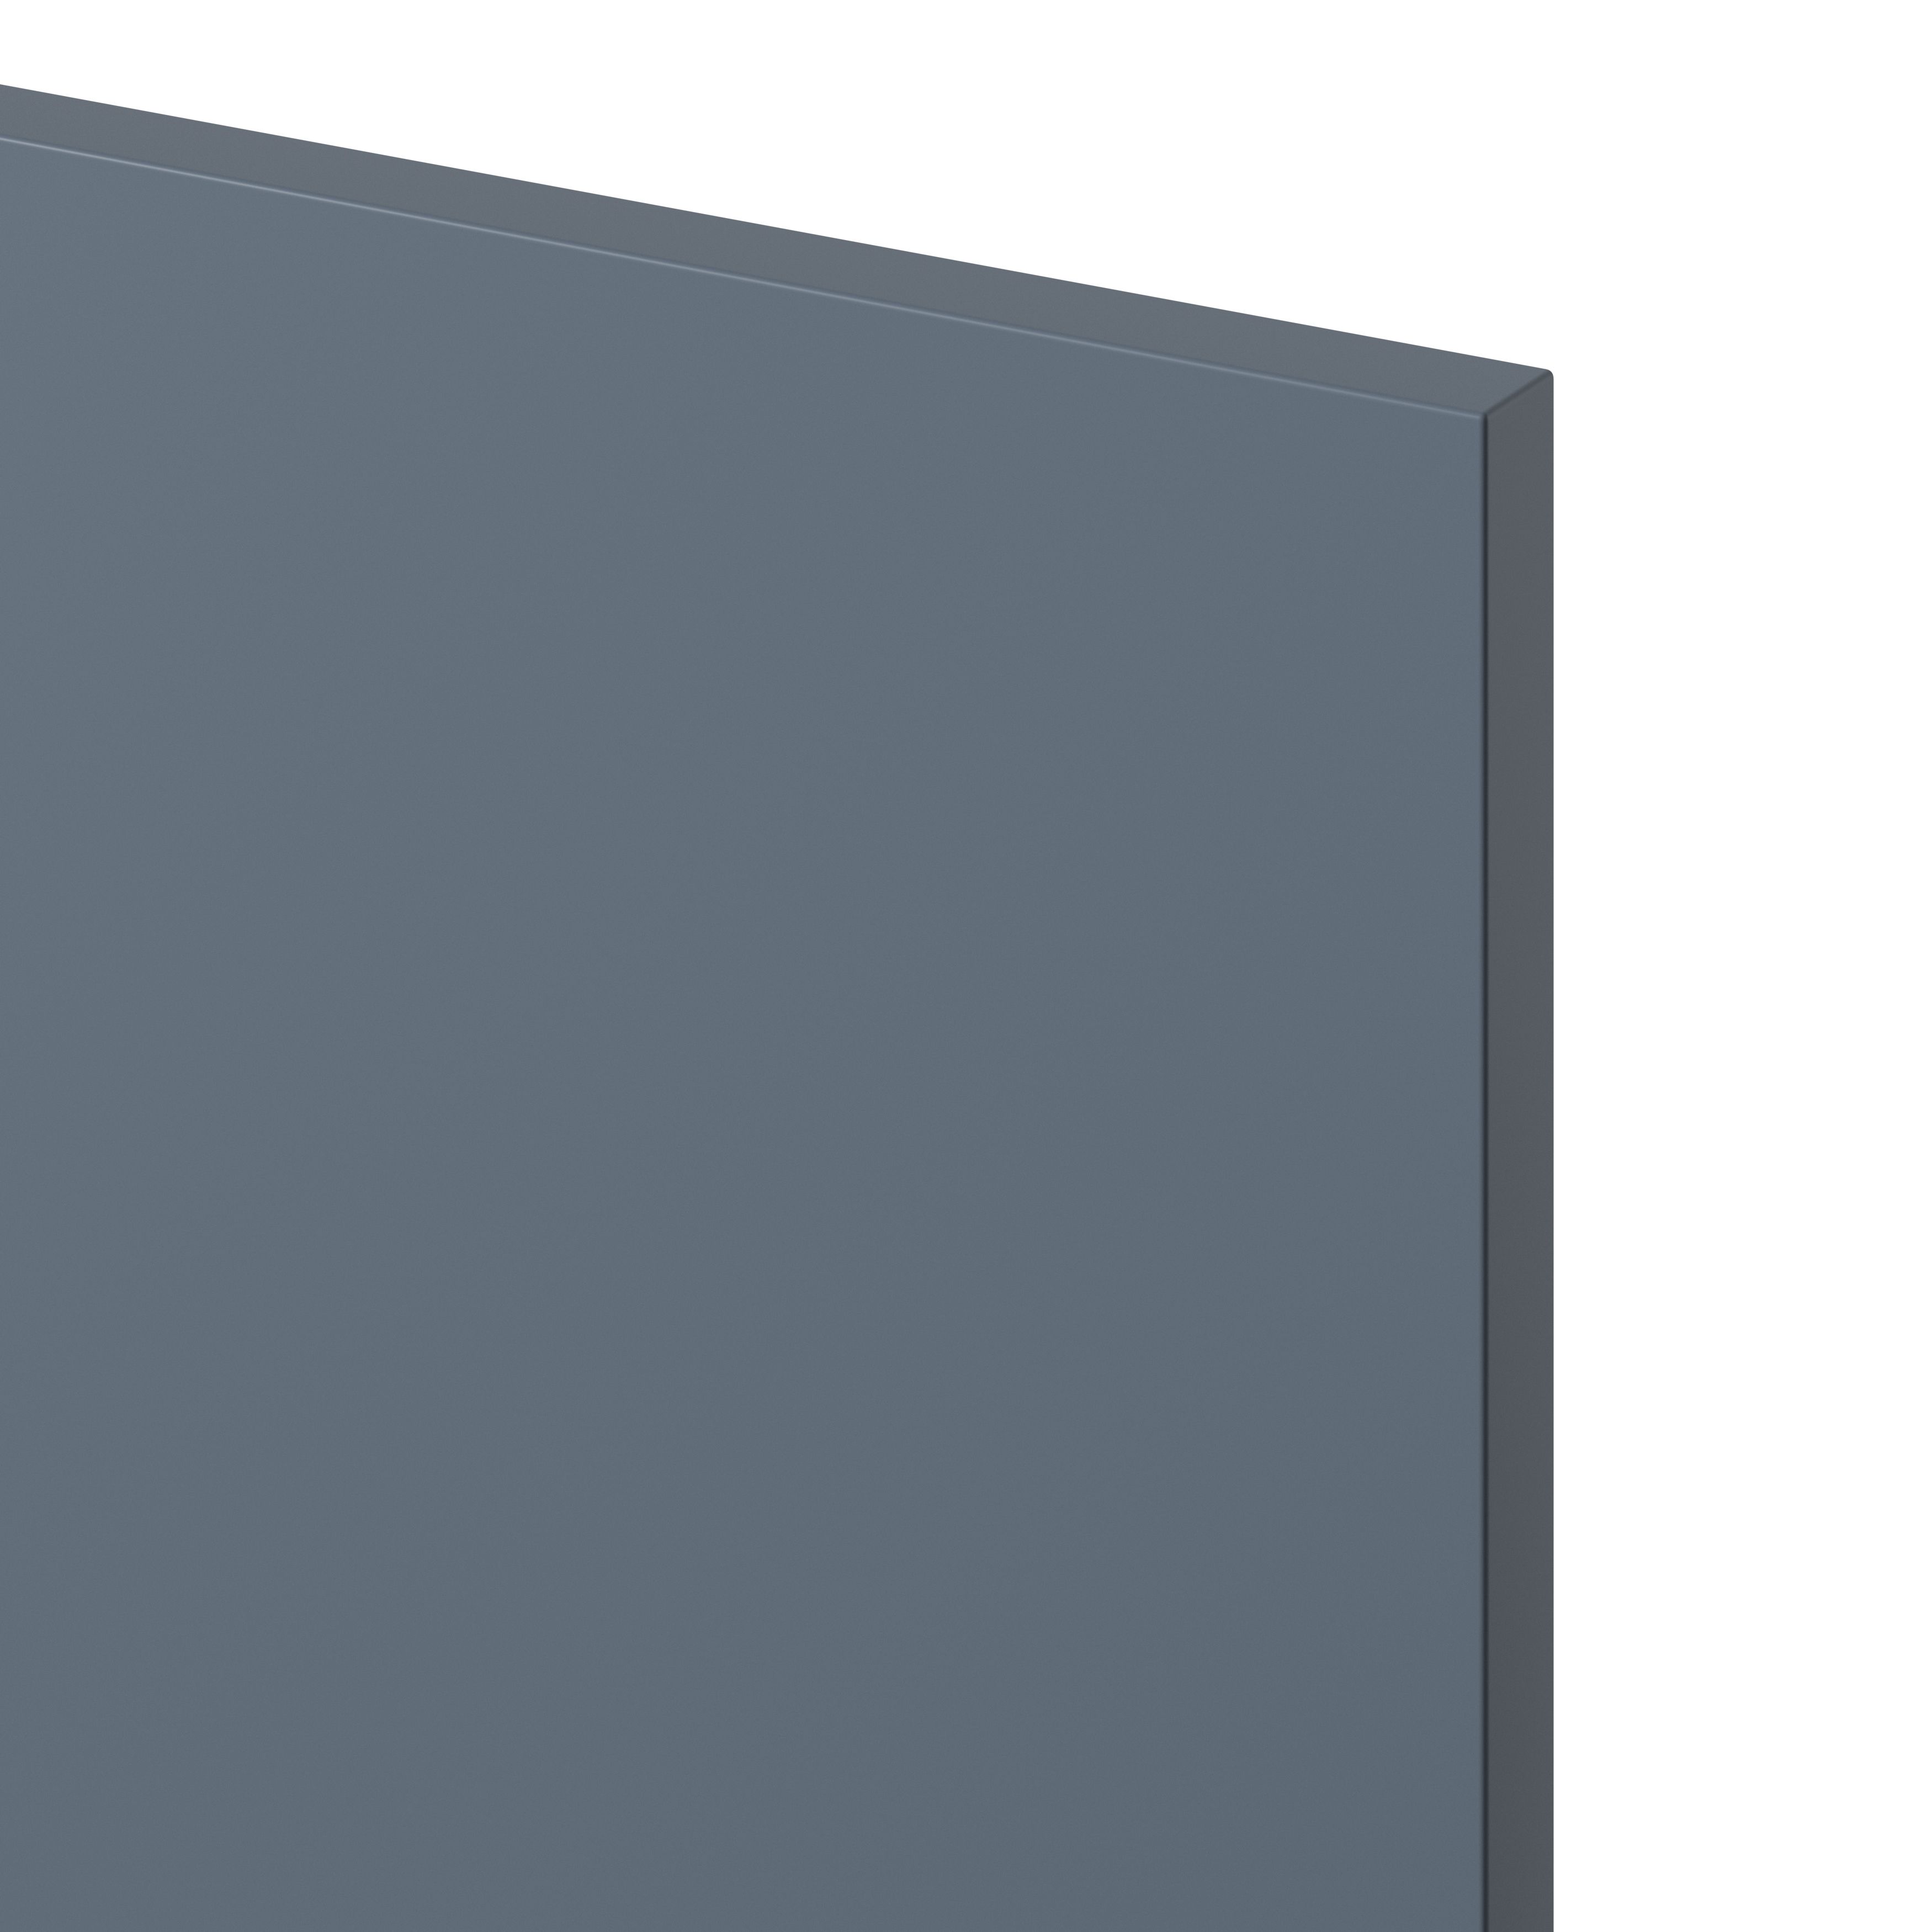 GoodHome Alisma Matt blue slab Drawer front, bridging door & bi fold door (W)300mm, Pack of 2